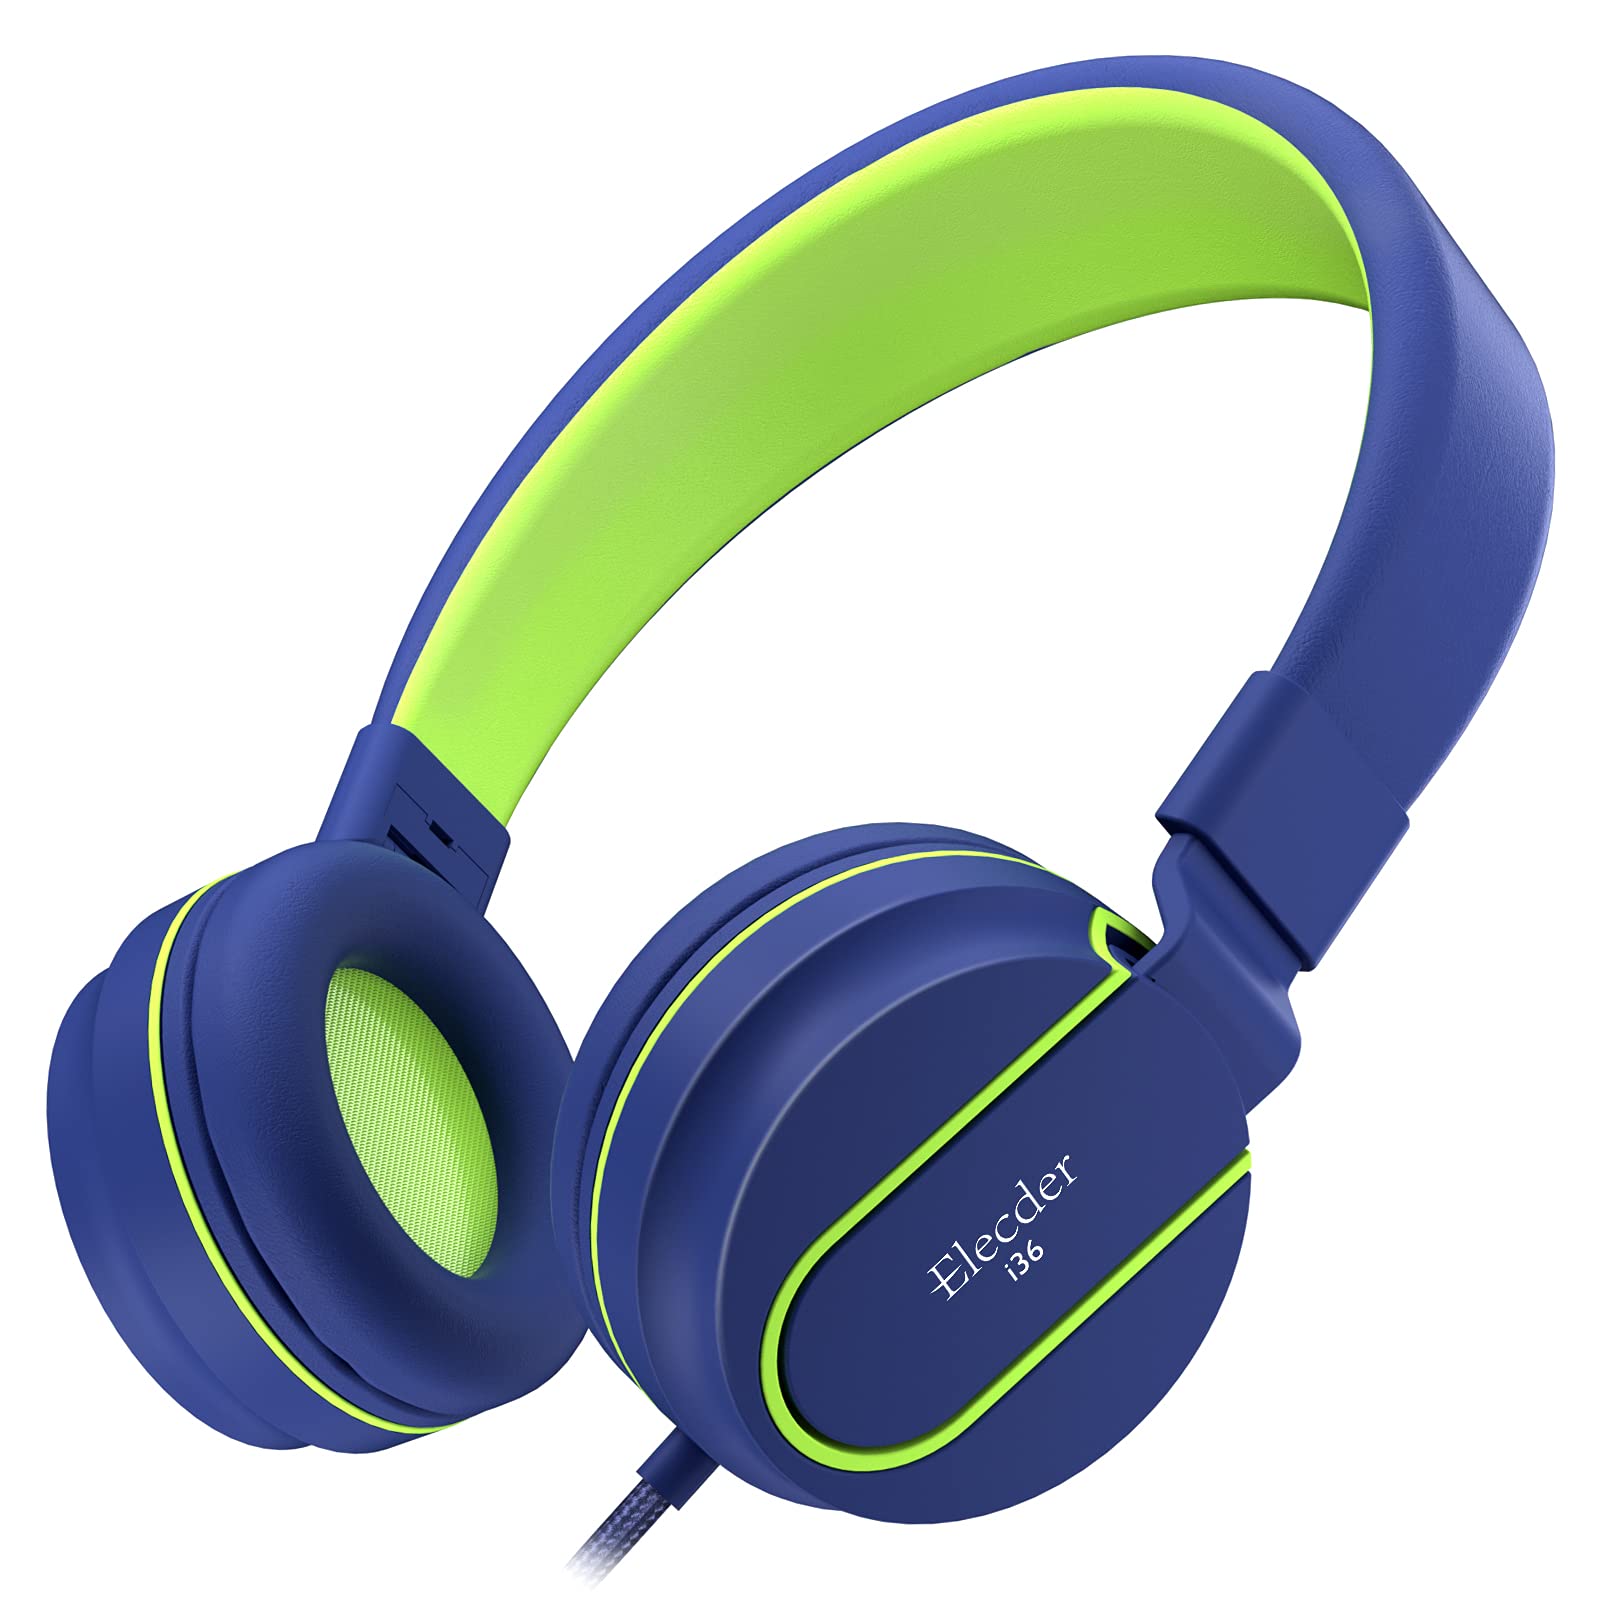 Elecder i36 儿童耳机儿童女孩男孩青少年可折叠可调节入耳式耳机 3.5 毫米插孔兼容手机电脑 Kindle MP3/4 学校平板电脑蓝色/绿色